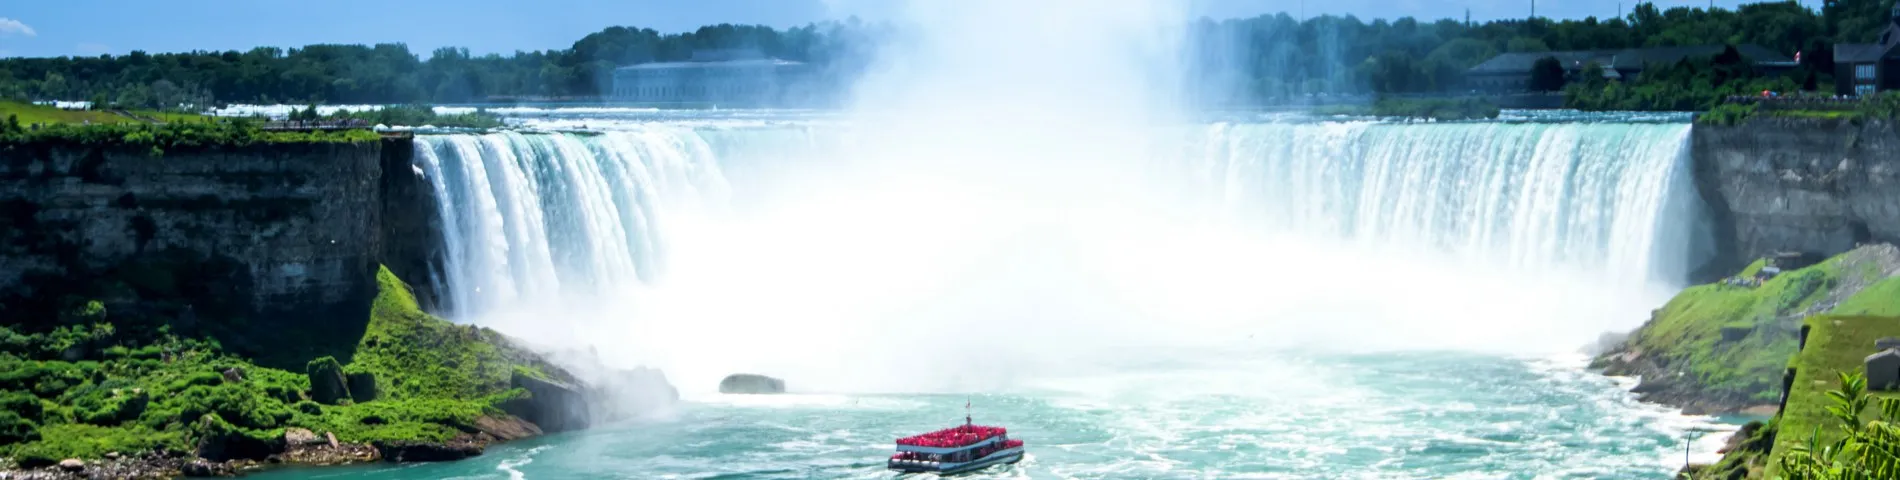 웰랜드(나이아가라 폭포) - Welland (Niagara Falls) - 